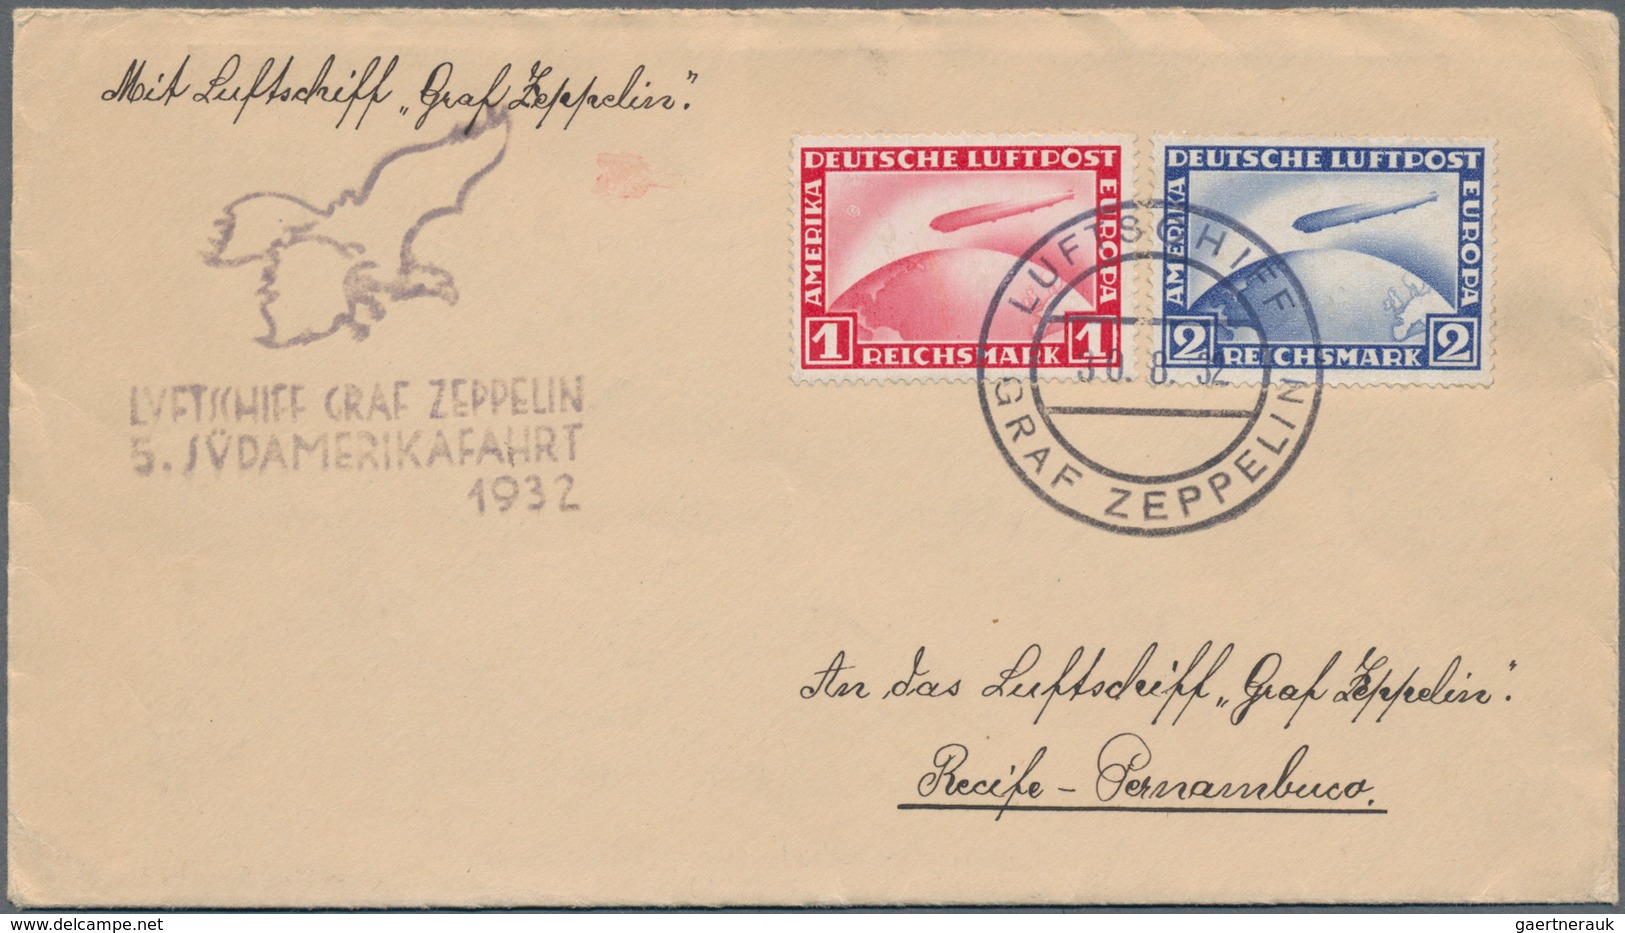 Deutsches Reich: 1912/1938 (ca.), schöner Posten von knapp 50 Belegen, dabei seltene Frankaturen wie